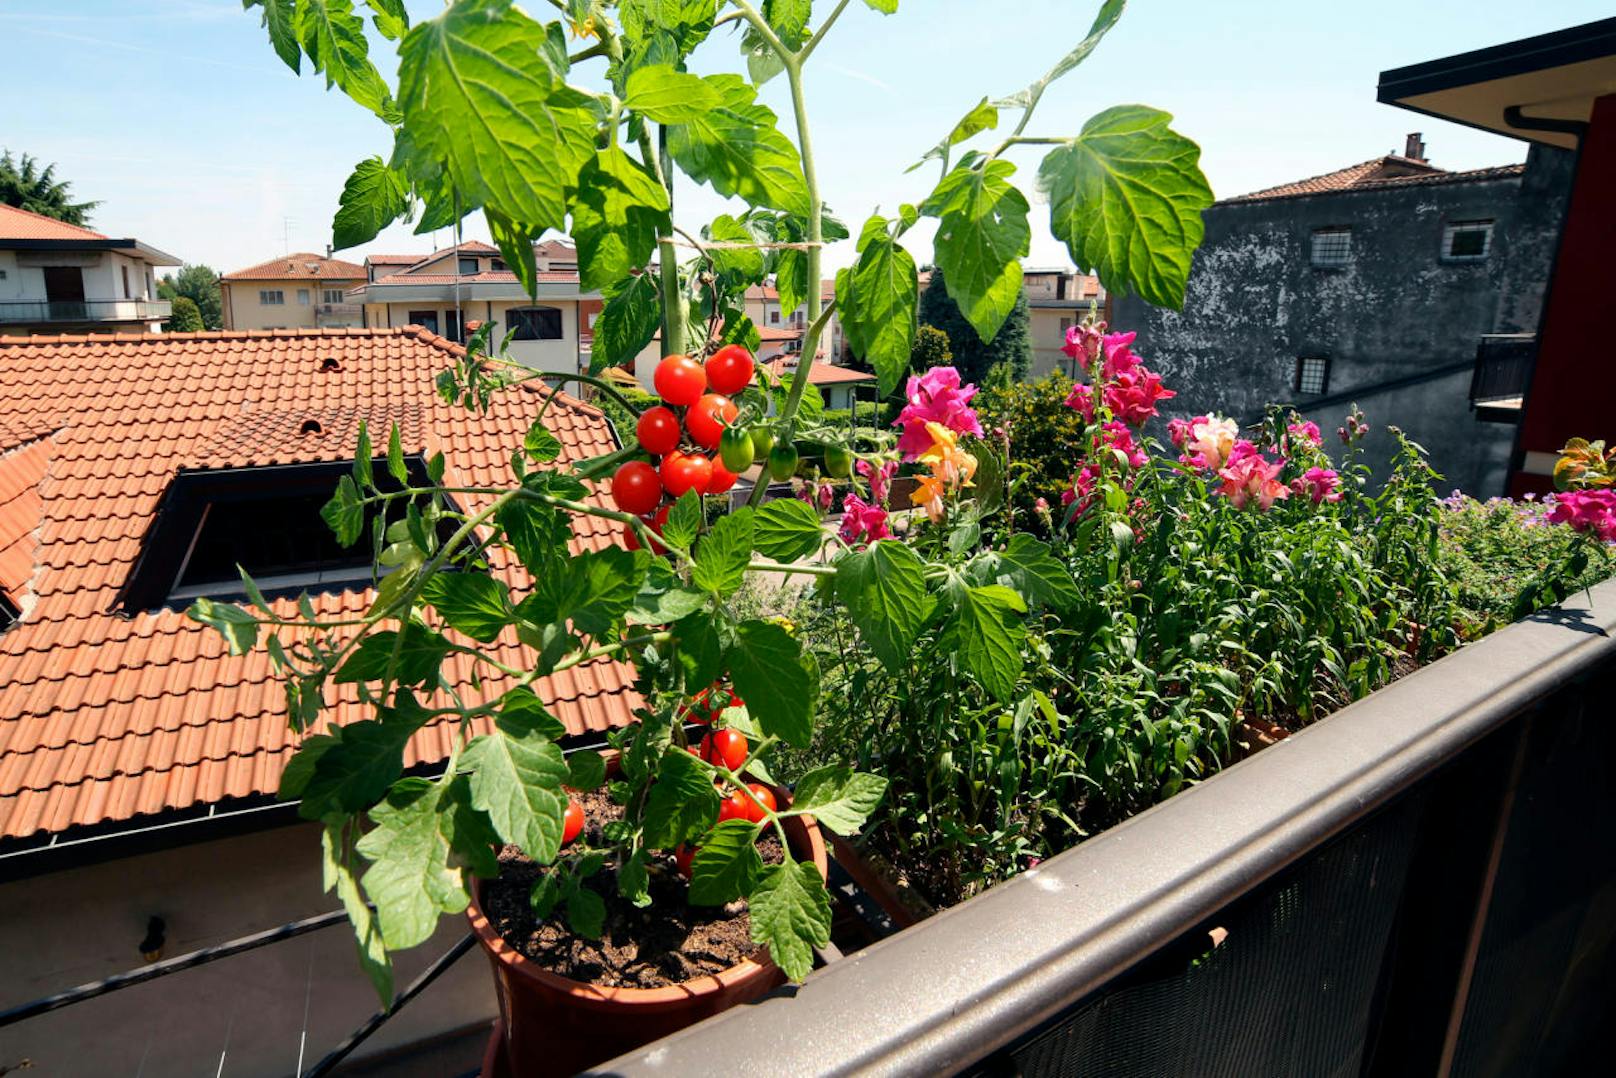 Tomaten machen sich prima auf dem Balkon und im Garten. Allerdings sollten sie erst nach den Eisheiligen an die frische Luft, wenn die Gefahr von Bodenfrost gebannt ist. Sie mögen es sonnig und benötigen viel Wasser. Auch müssen sie immer aufgebunden und vor Regen geschützt werden.